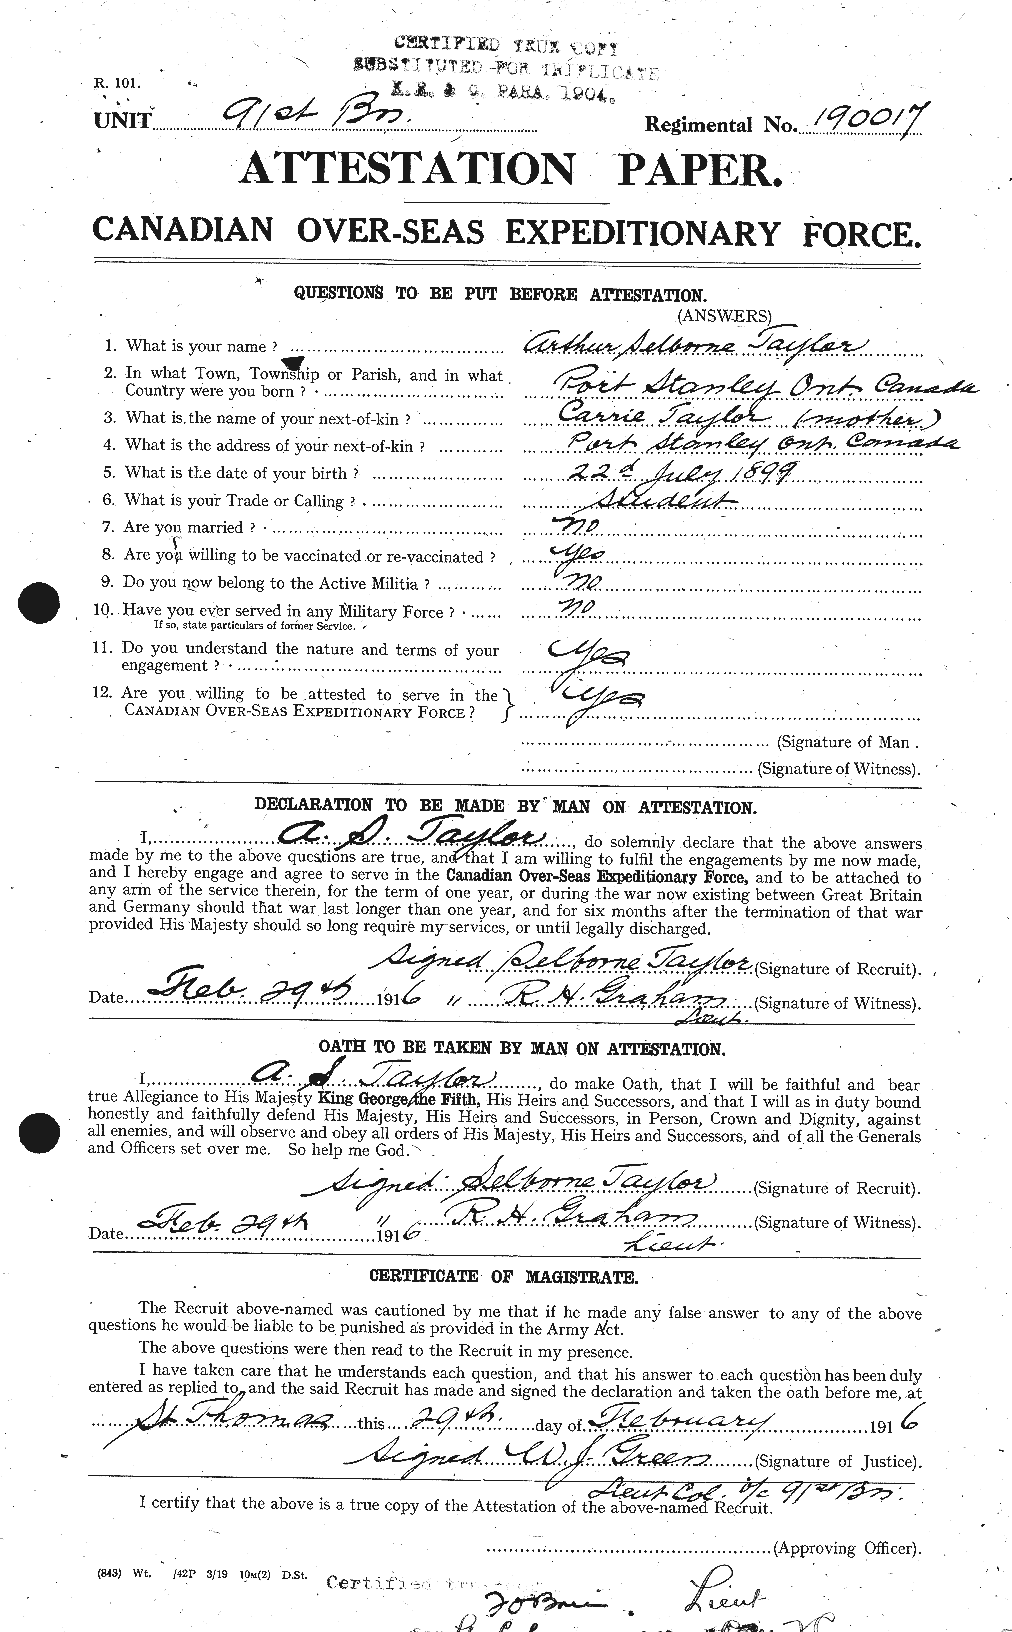 Dossiers du Personnel de la Première Guerre mondiale - CEC 626744a